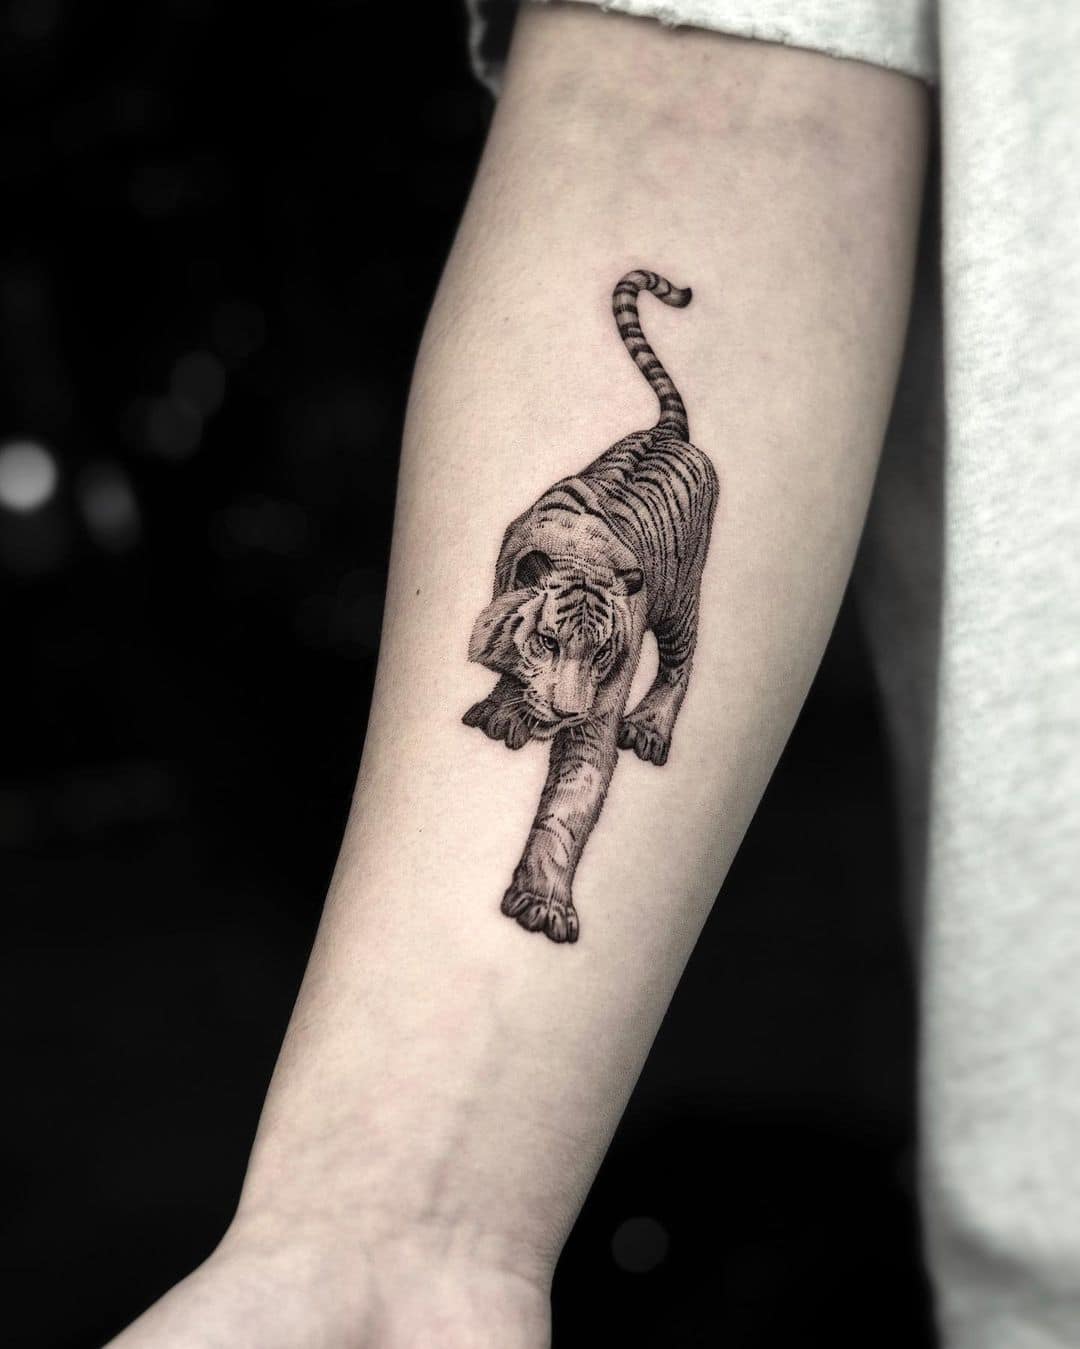 Beautiful Realistic tiger tattoo on arm by z9 ttt